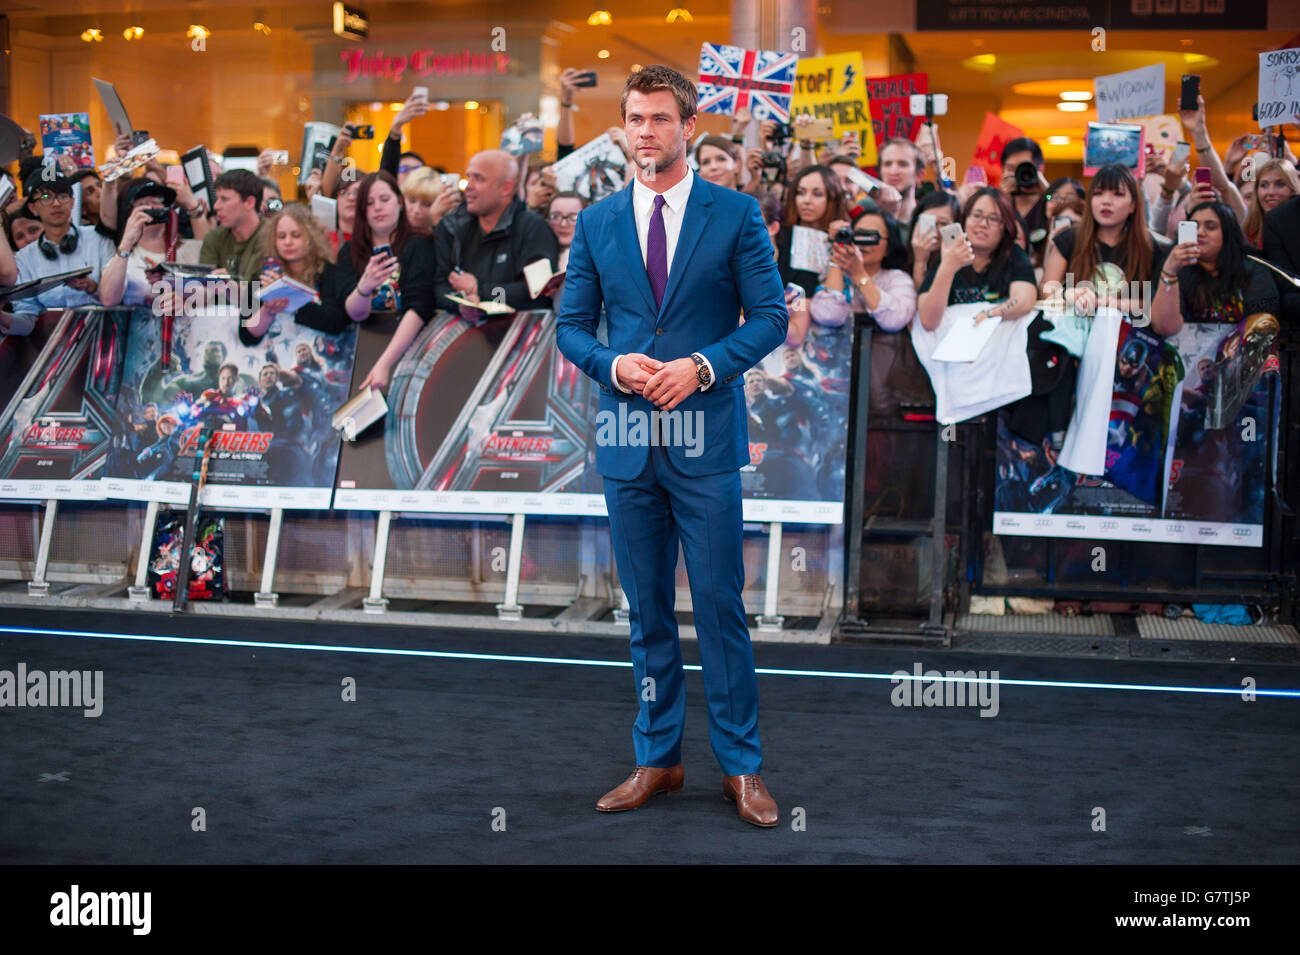 Chris Hemsworth assistant à la première européenne d'Avengers: Age of Ultron à vue Westfield, Shepherds Bush Green, Londres. Banque D'Images